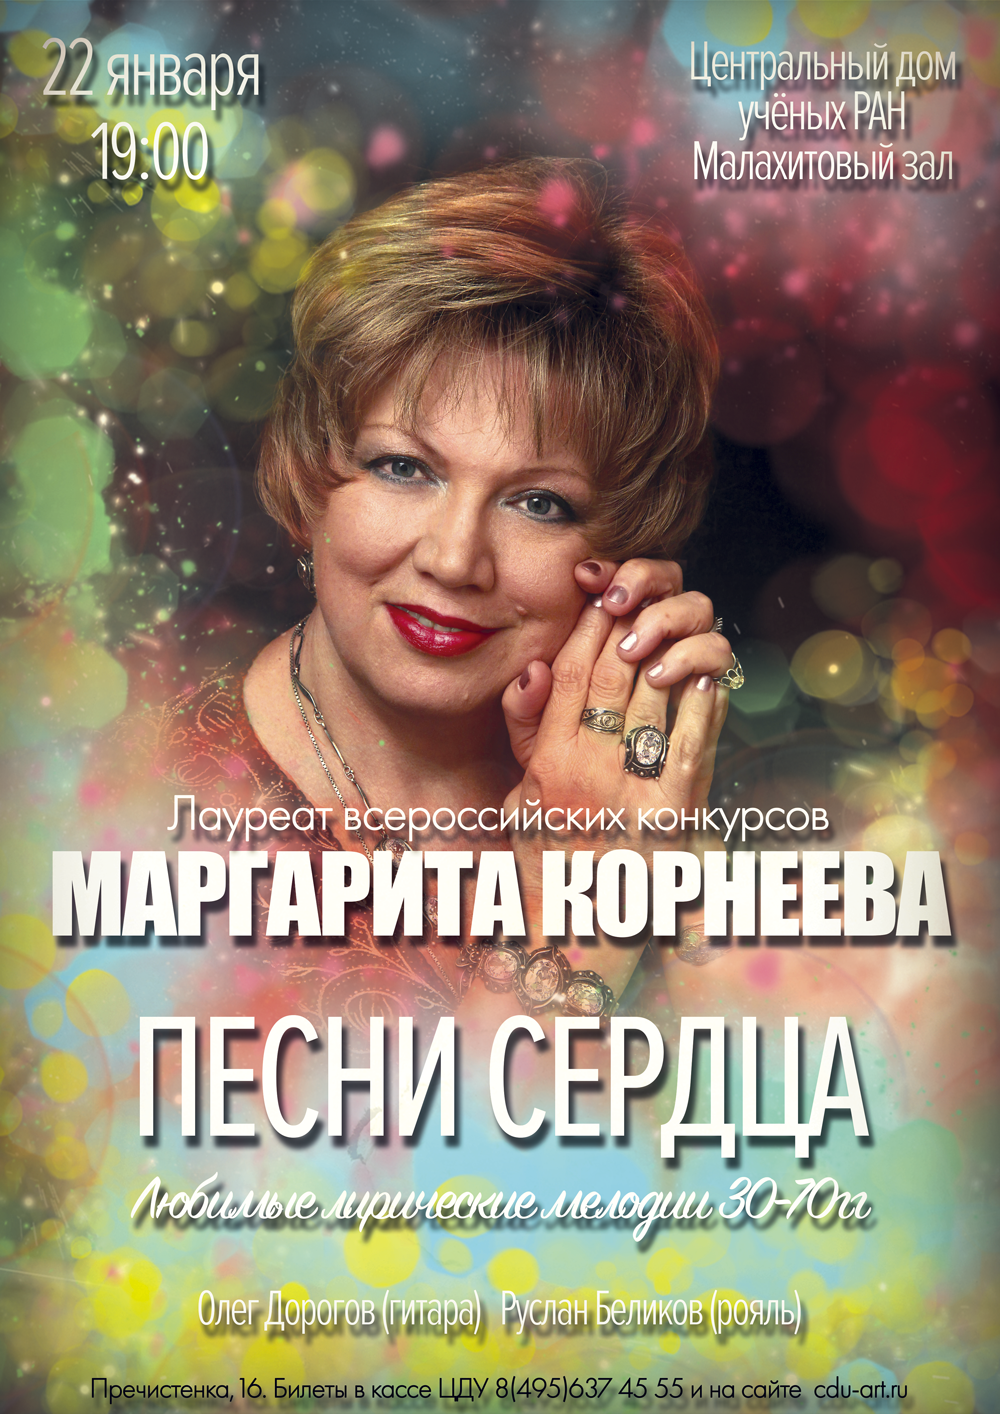 Афиша концерта в Малахитовом зале ЦДУ.